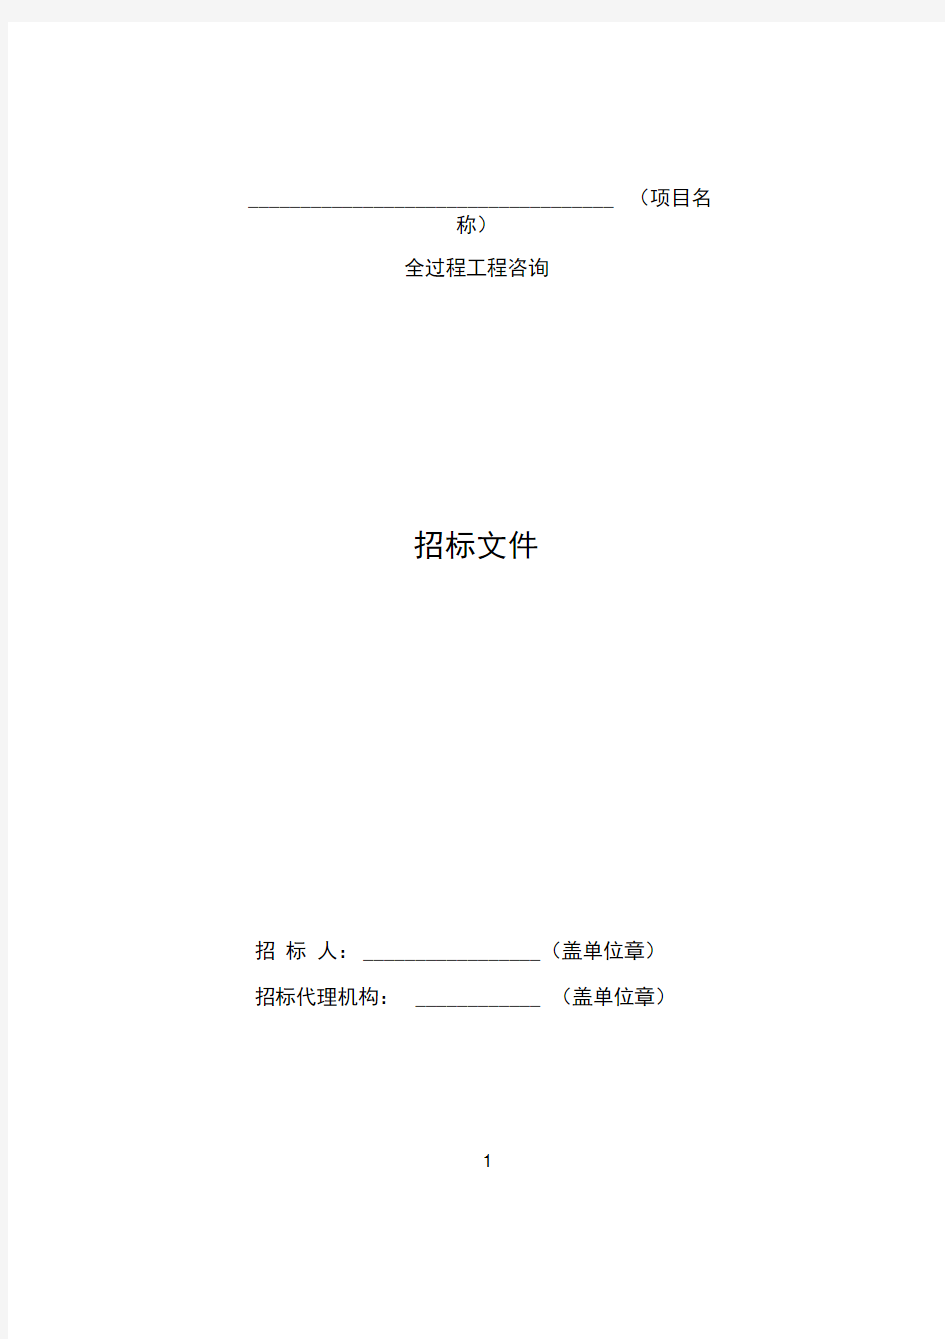 贵州省建设工程全过程工程咨询招标文件示范文本